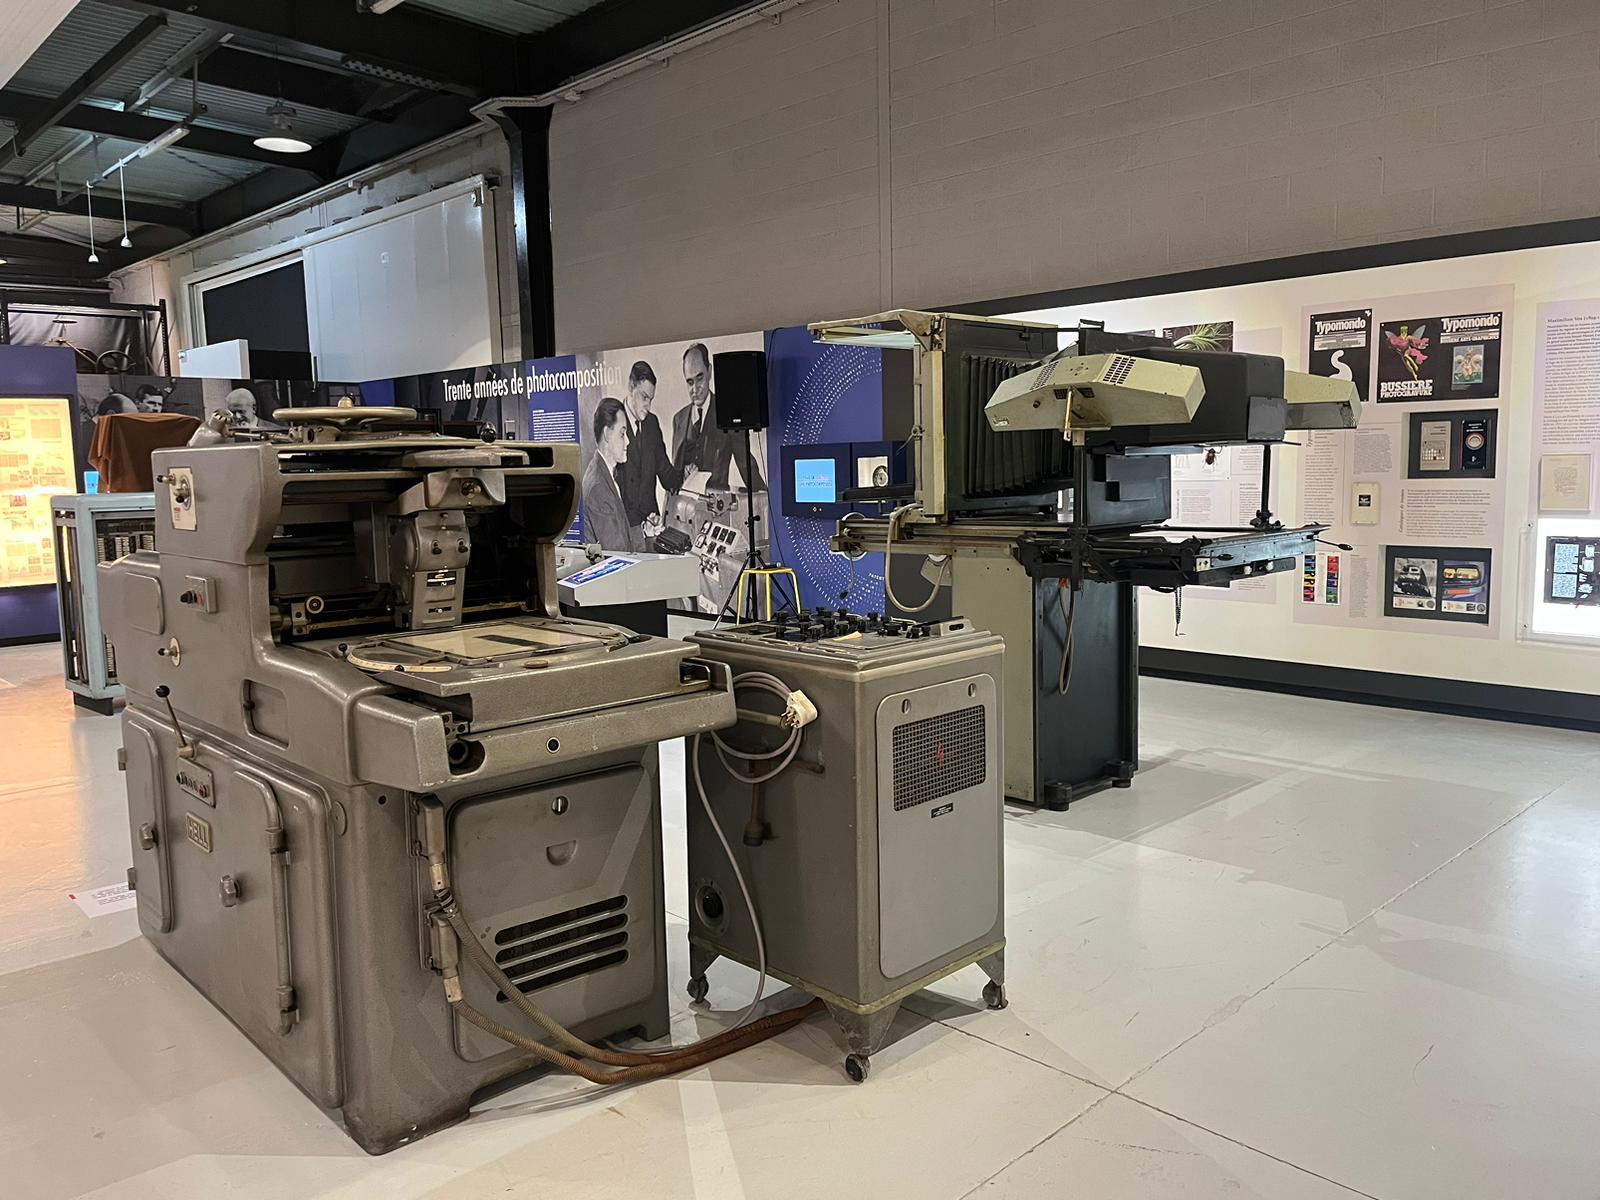 Le Musée Bussière à l’Atelier-Musée de l’Imprimerie 